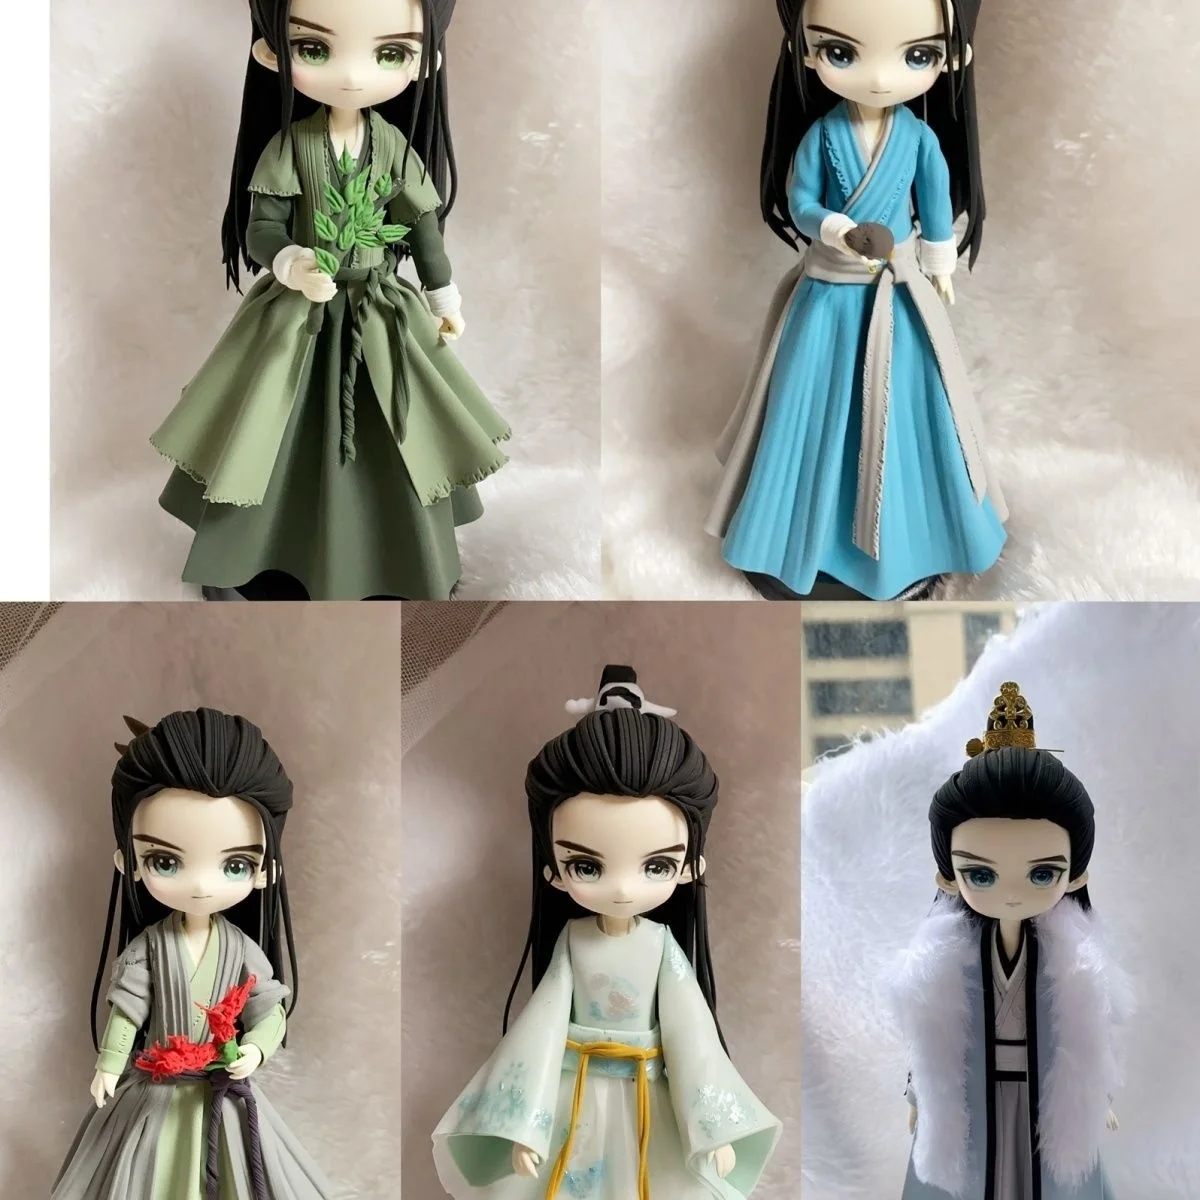 

Chang Xiang Si Tushan Jing Clay Doll Handmade Ye Shiqi Tu Shan Jing Deng Wei Clay Dolls Collection Gift